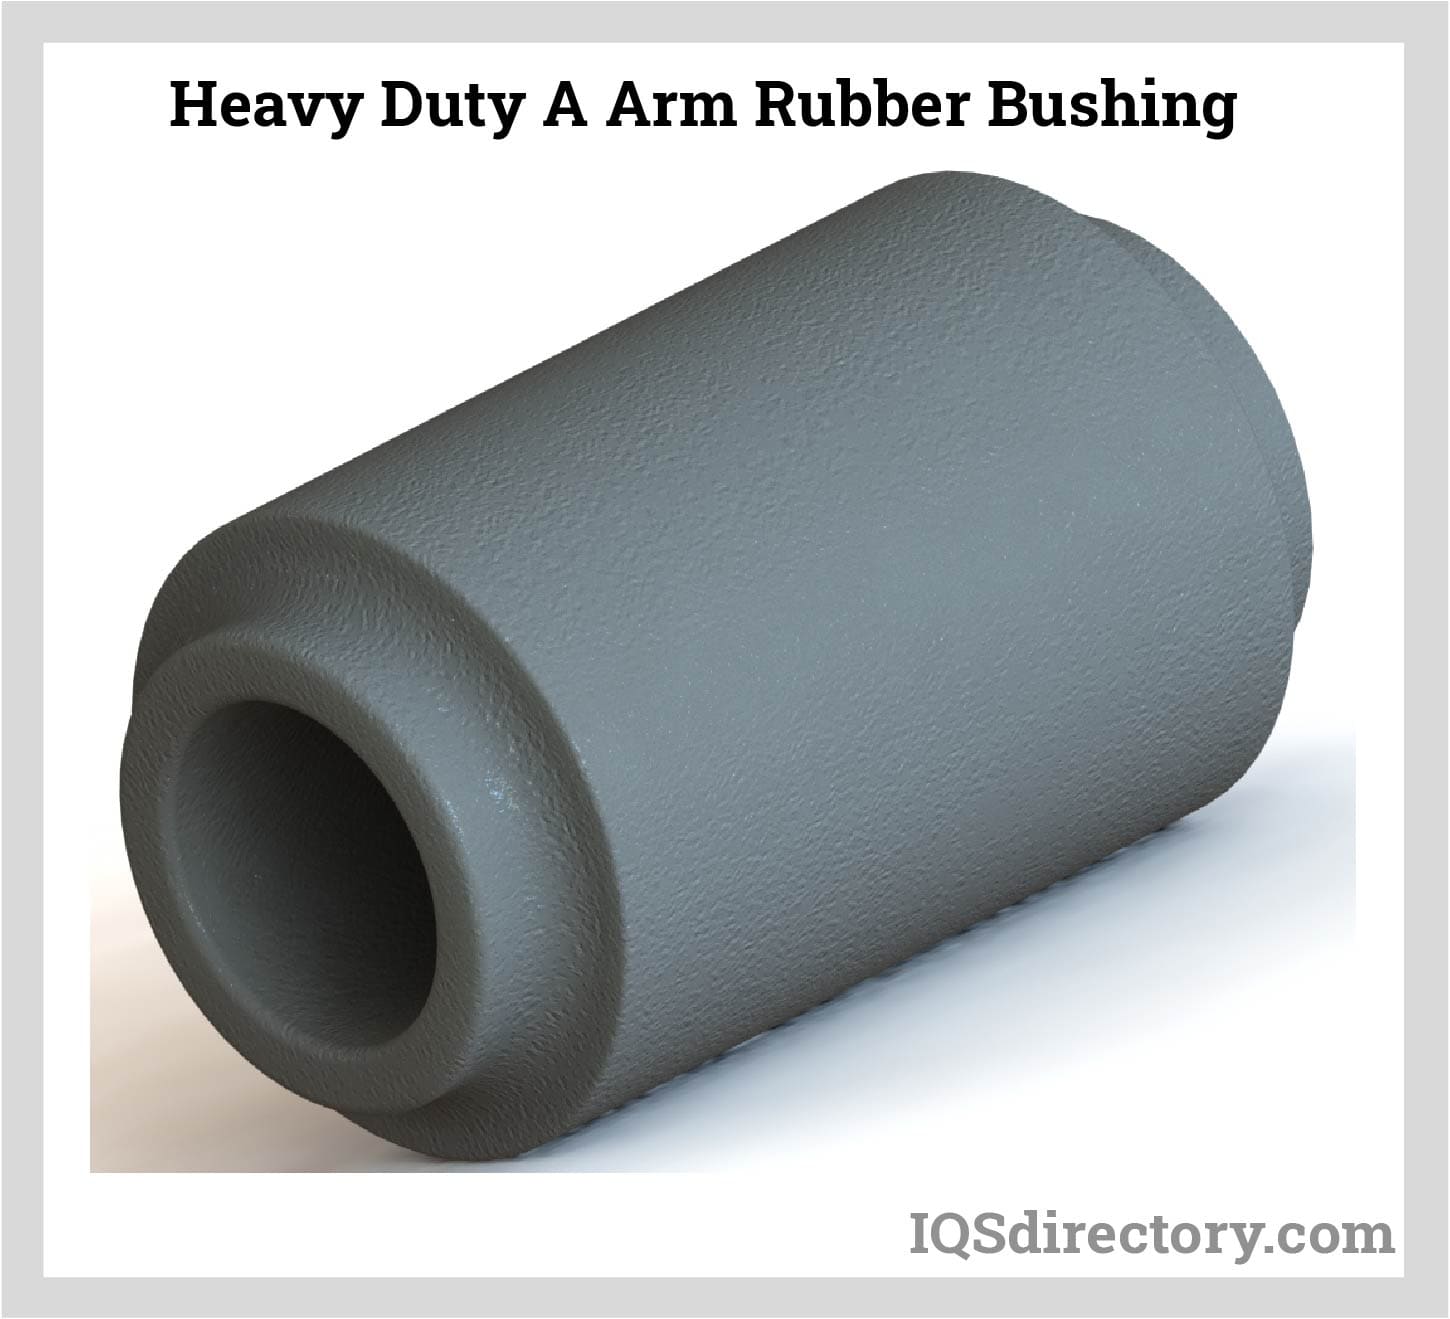 Heavy Duty A Arm Rubber Bushing